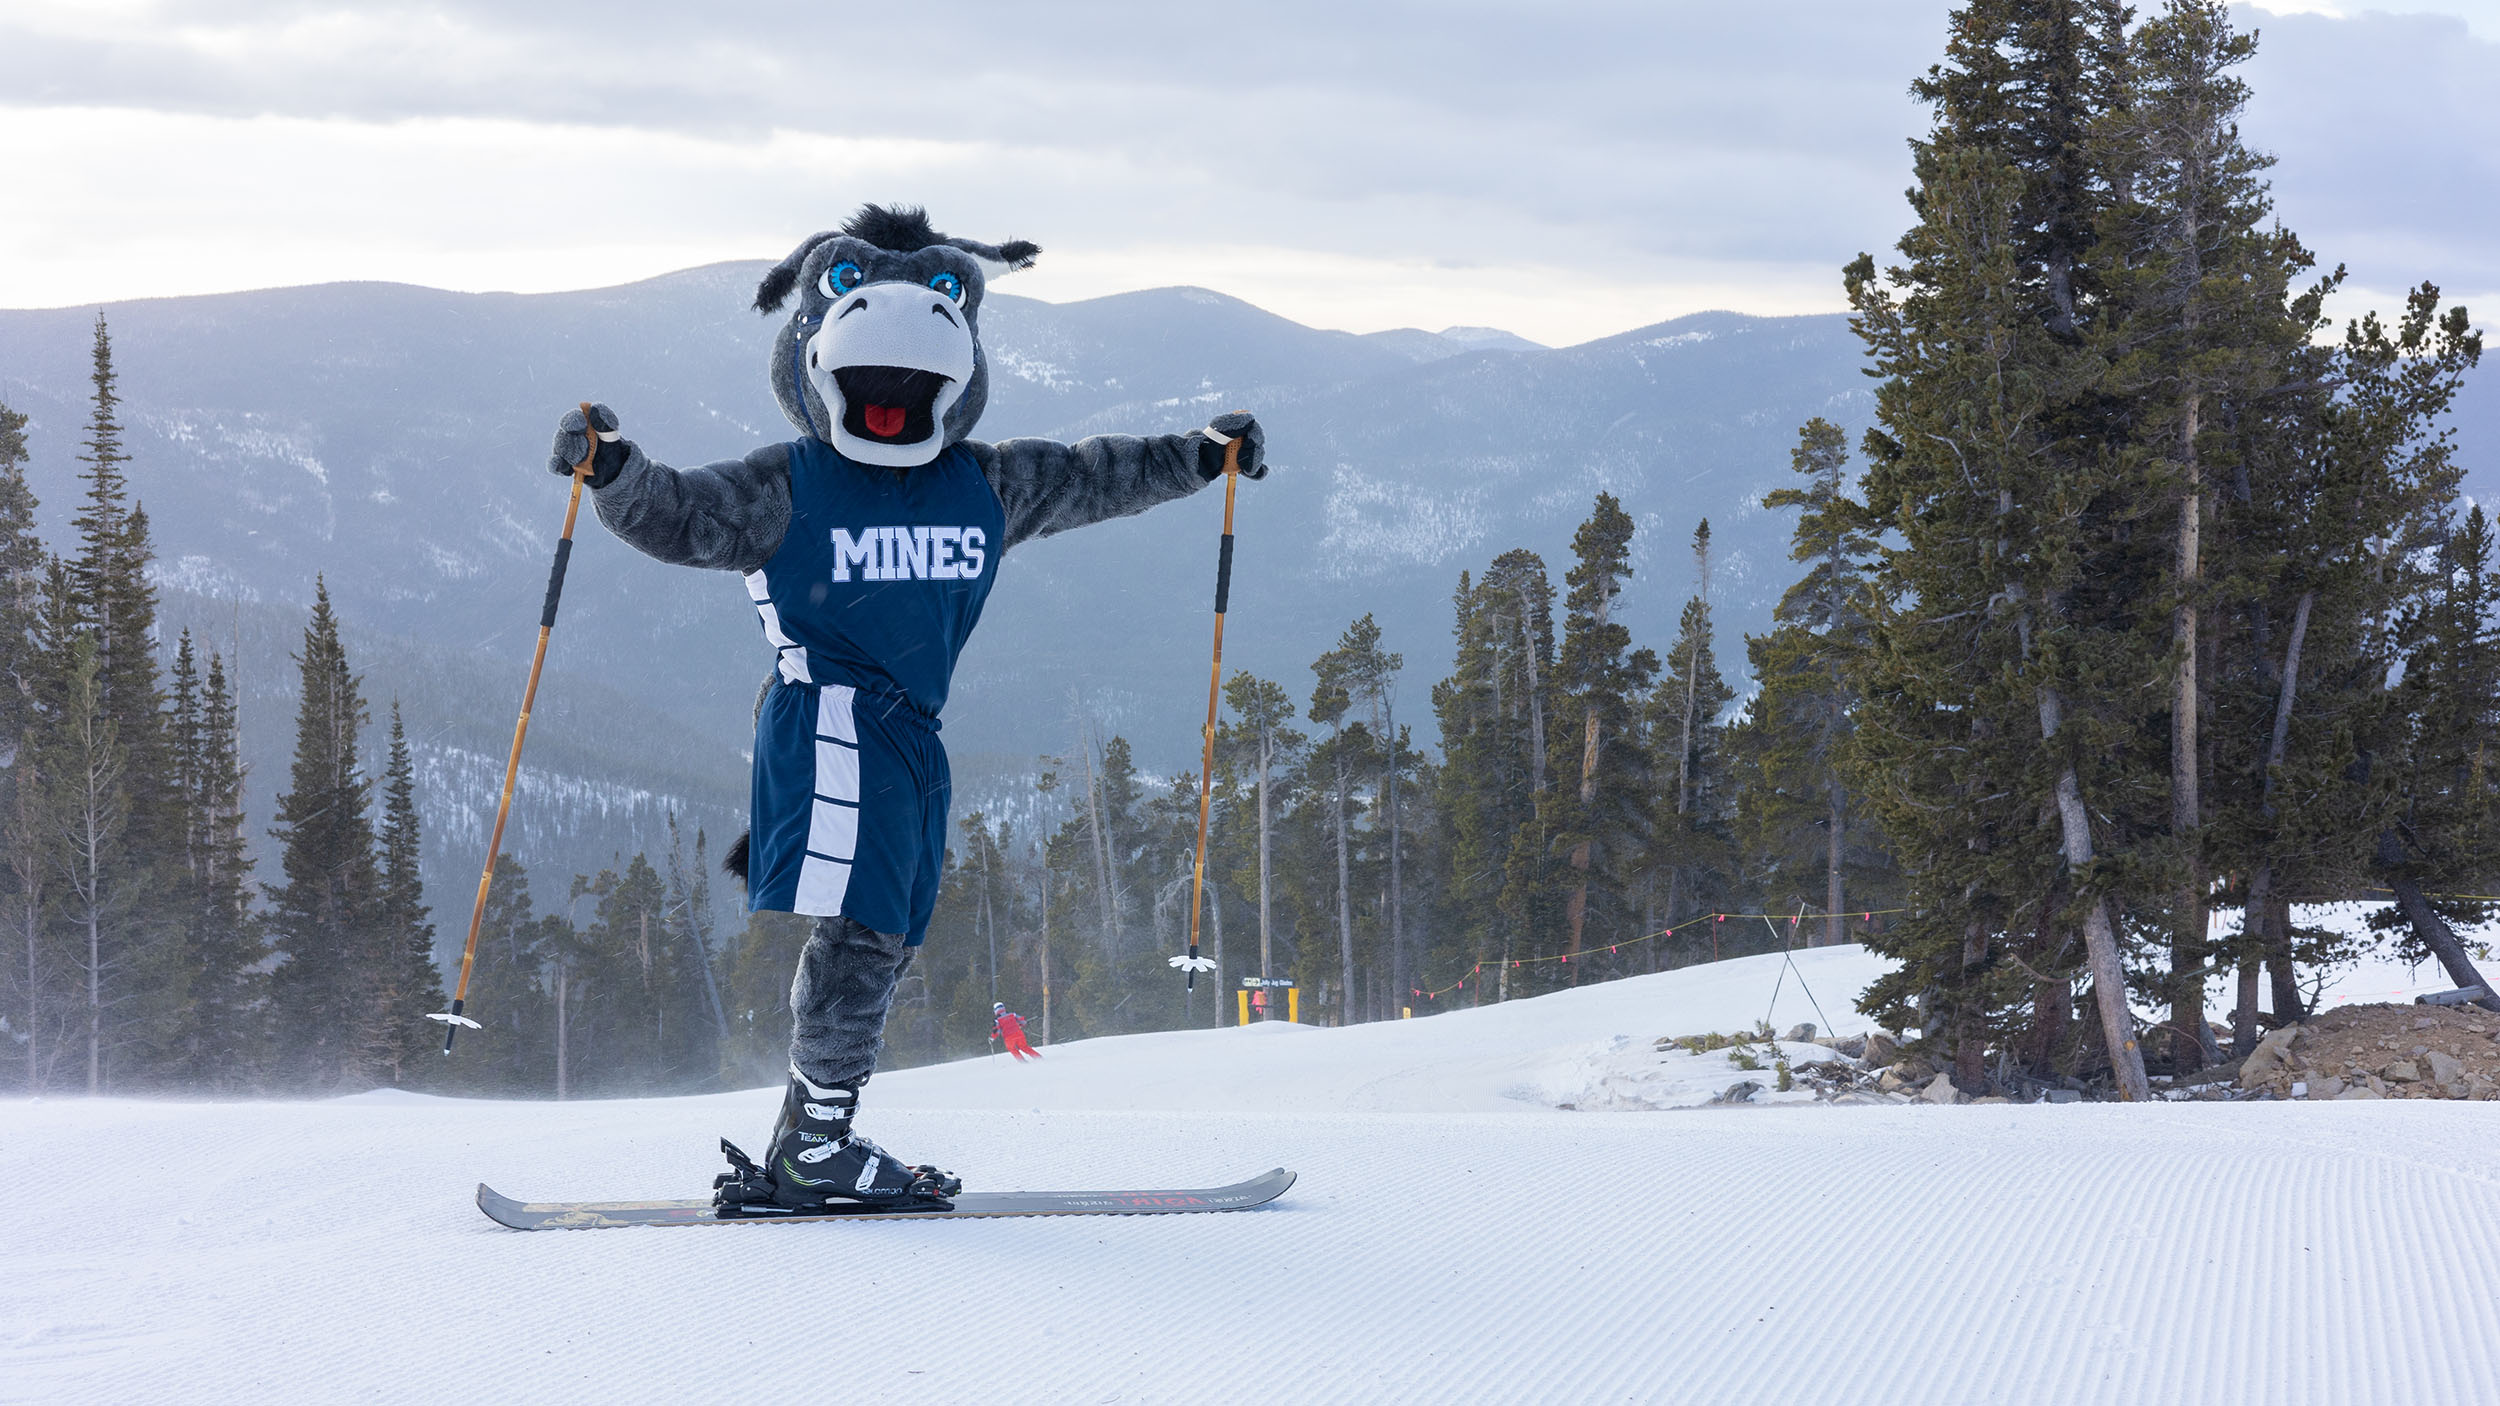 Mascot Blaster skiing